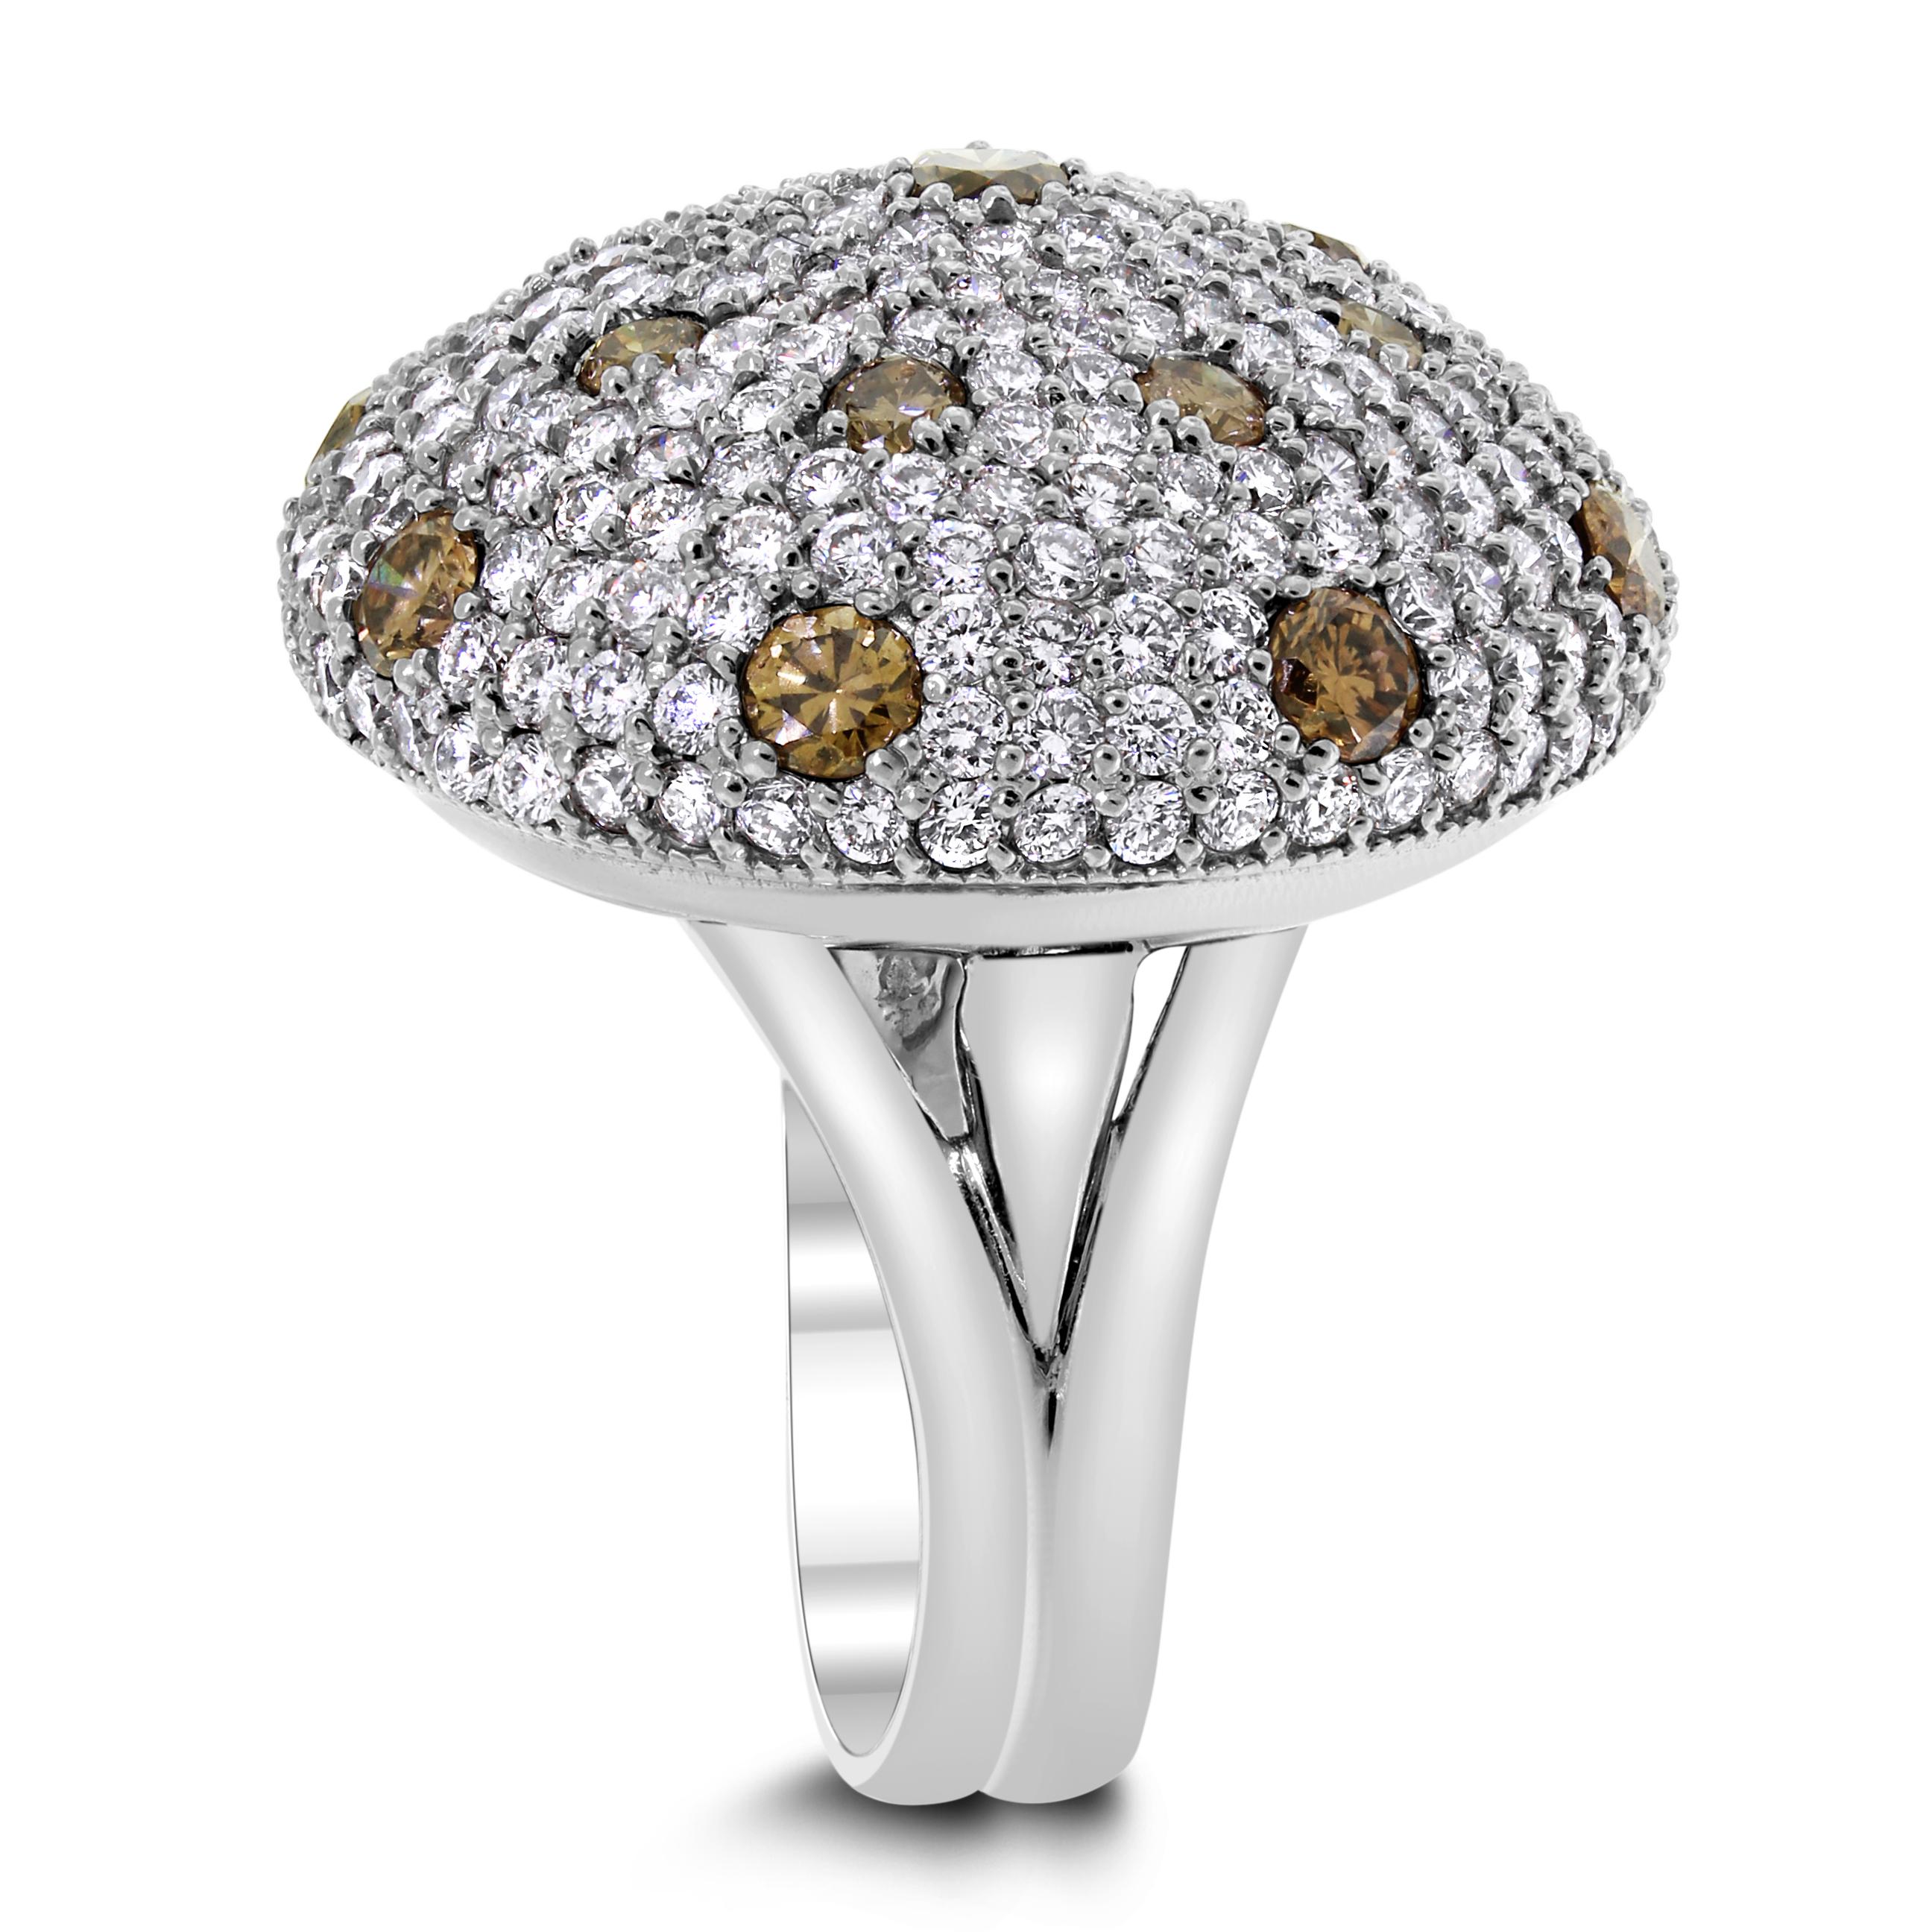 Mit seinen weißen und schokoladenbraunen Diamanten, die in Pflaster gefasst sind, bildet dieser Ring frech einen Pilz nach und ist ein schillerndes Schmuckstück.

Gesamtgewicht der Diamanten: 5,75 ct 
Form des Diamanten: Rund 
Farbe des Diamanten: F